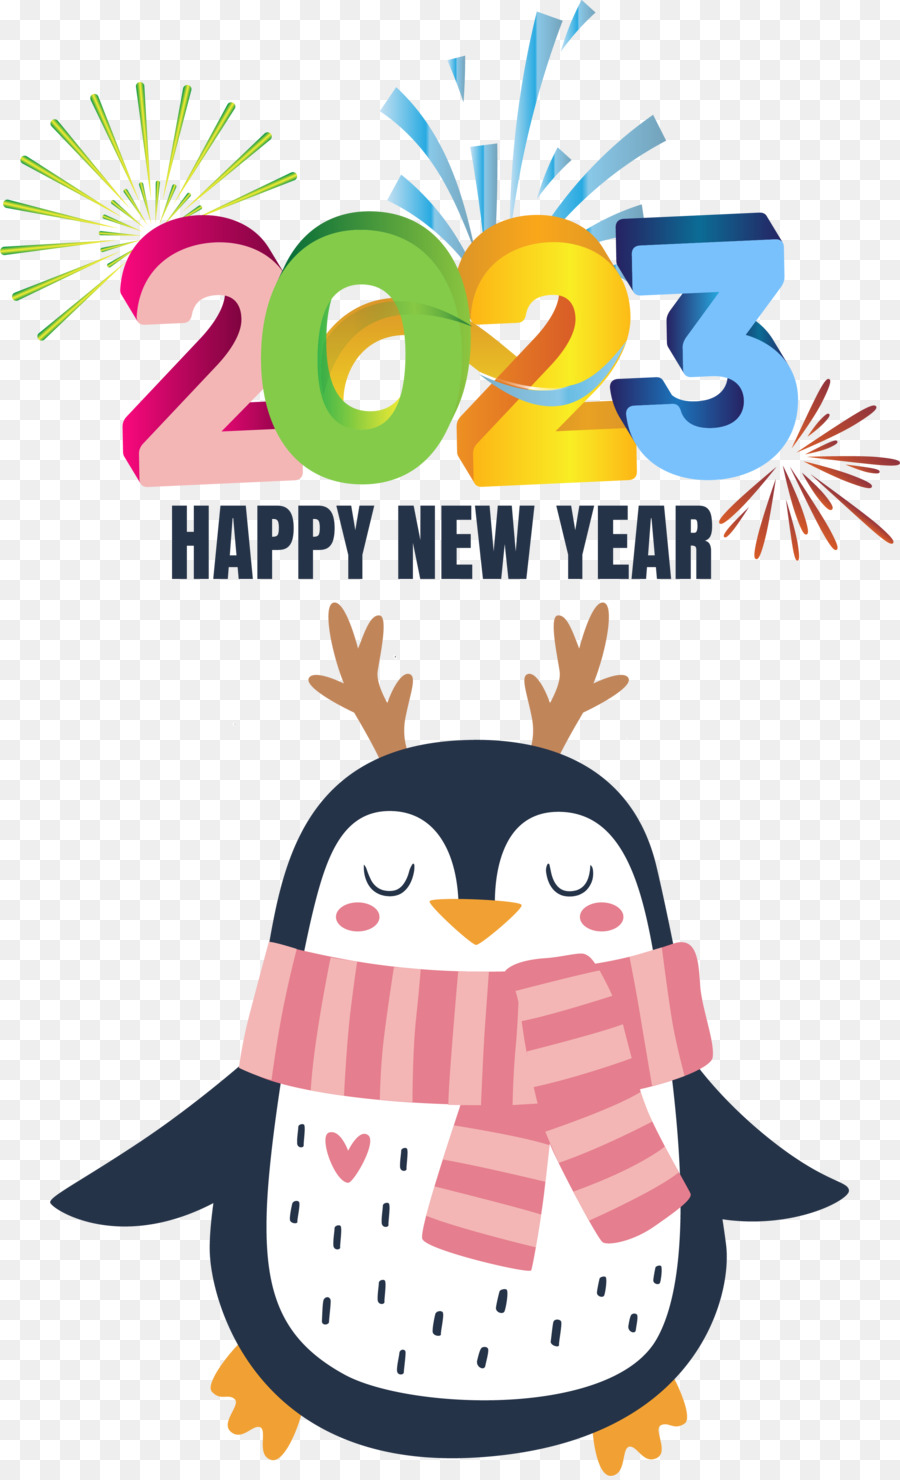 felice anno nuovo - 